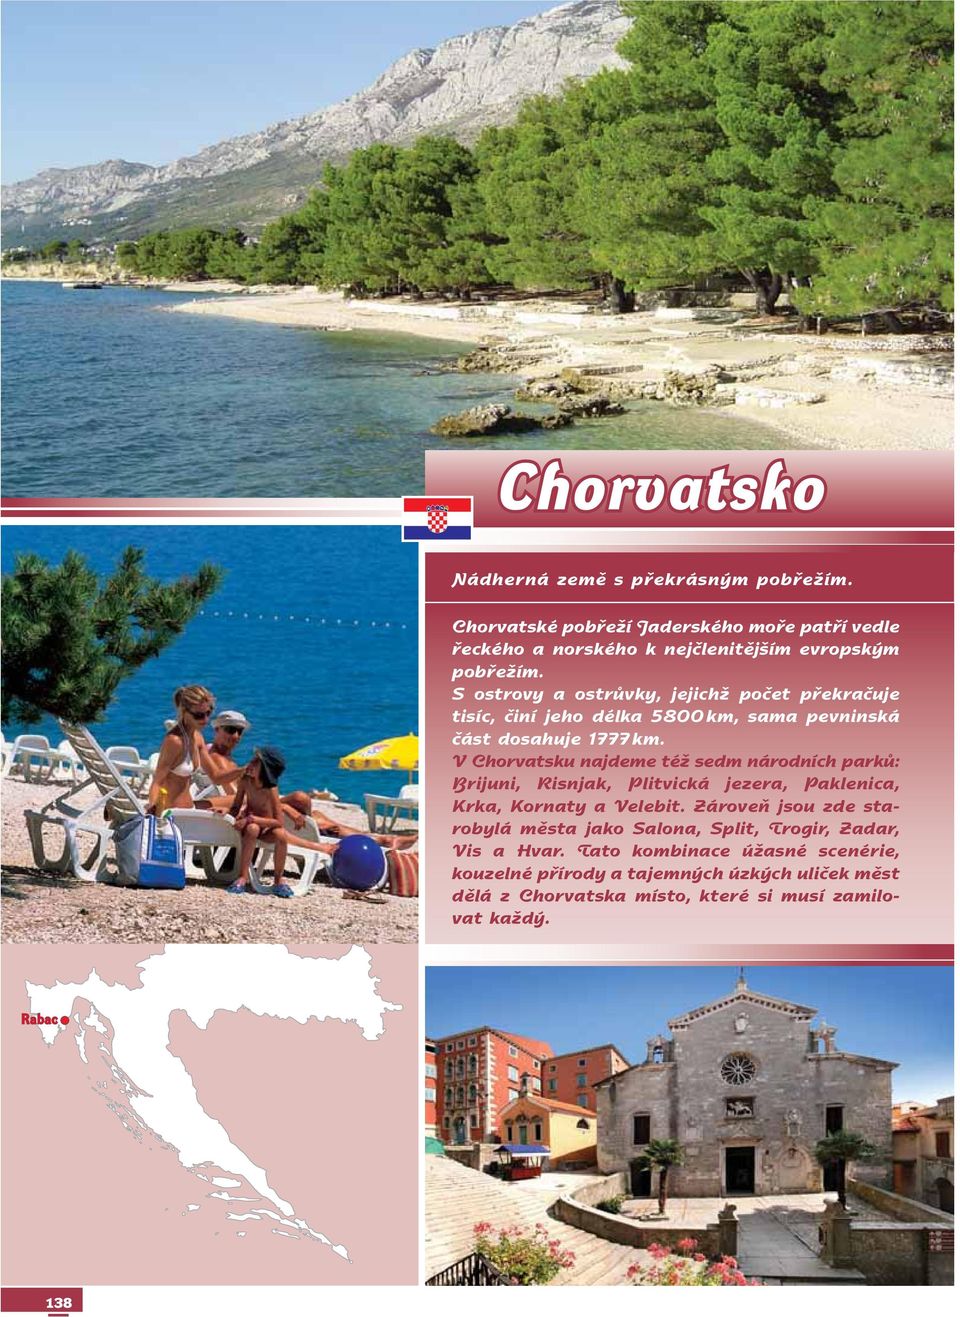 V Chorvatsku najdeme též sedm národních parků: Brijuni, Risnjak, Plitvická jezera, Paklenica, Krka, Kornaty a Ve le bit.